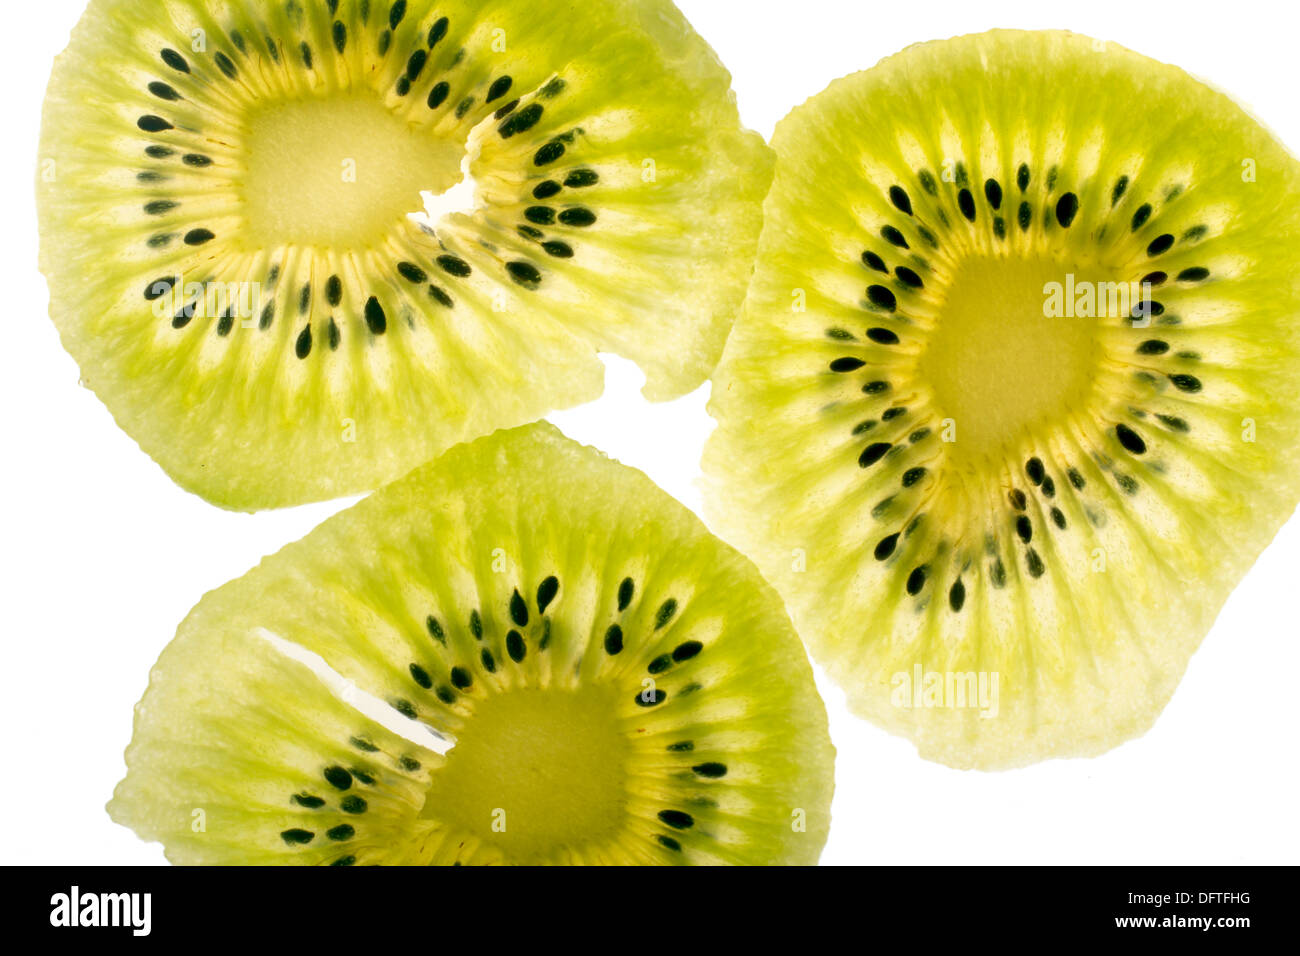 Slices of kiwi fruit, isolated on white. Stock Photo